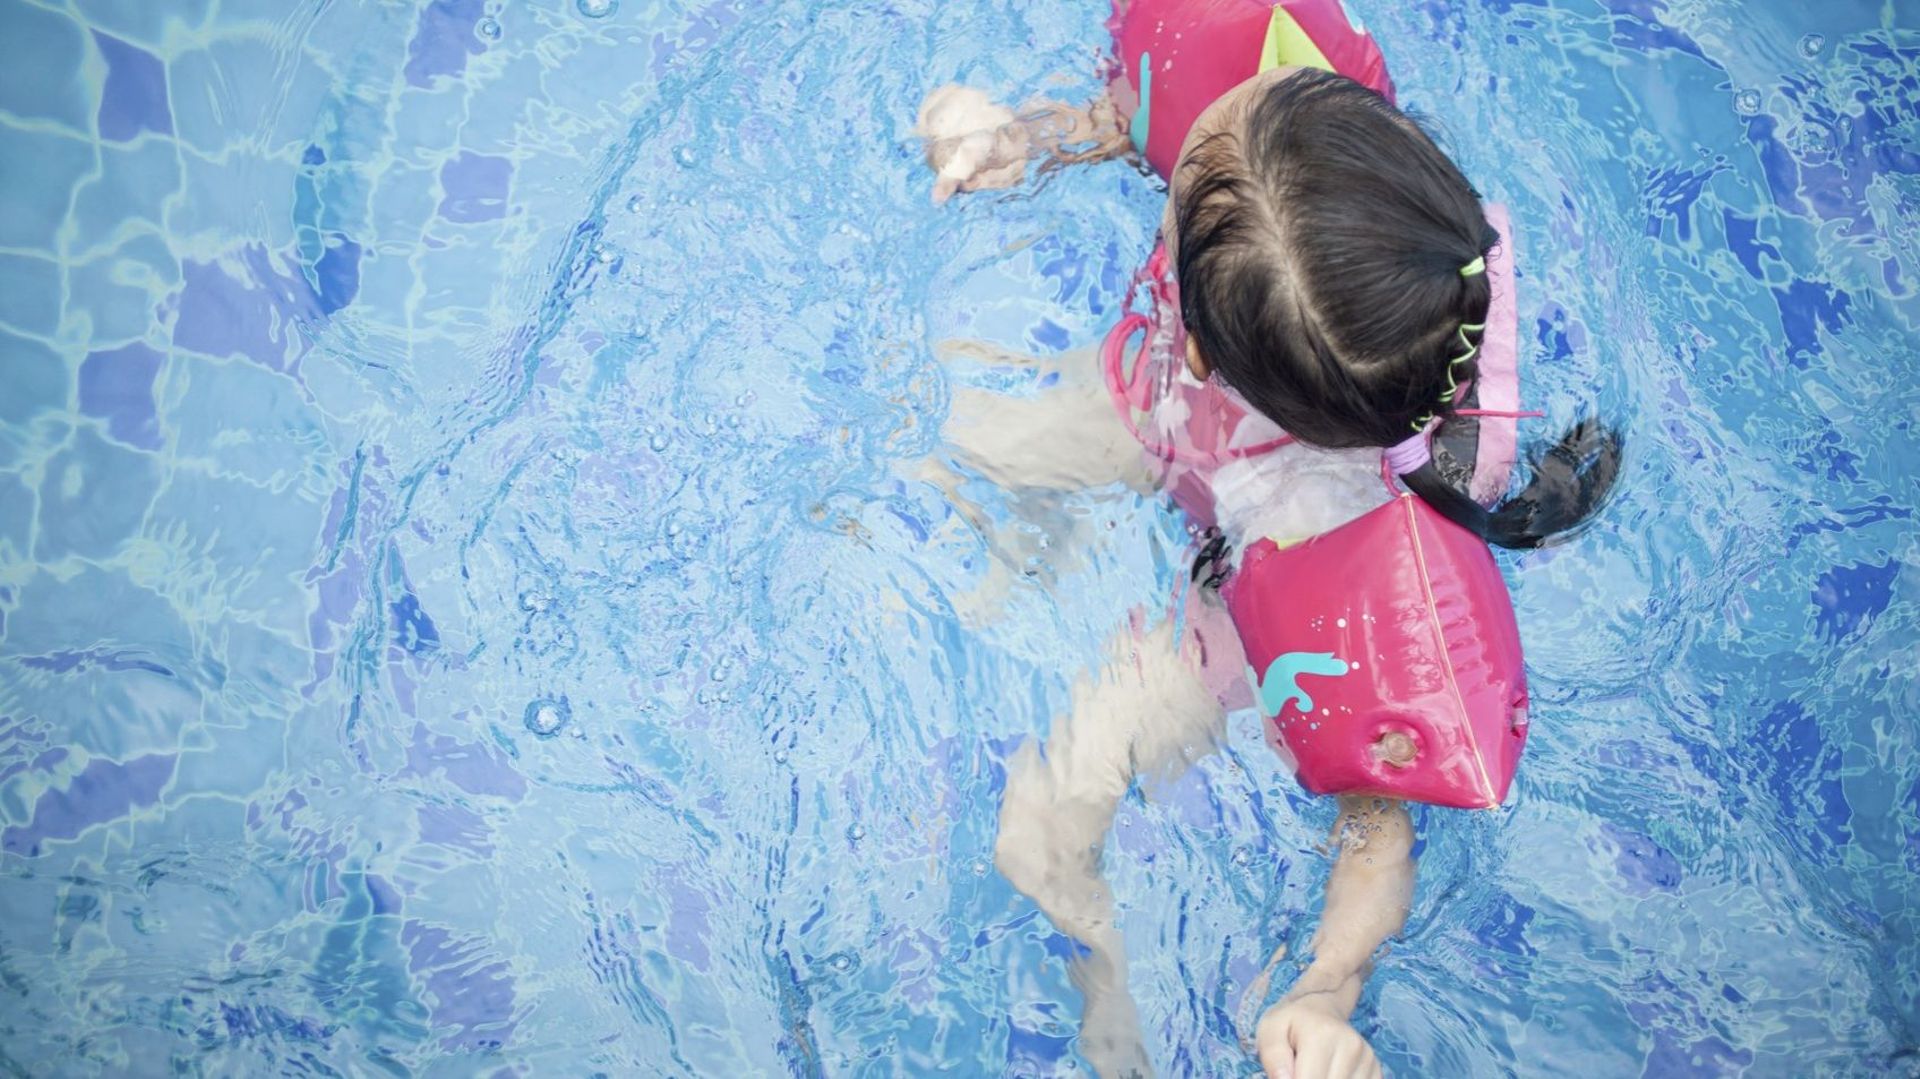 Baignade des enfants : choisir un maillot flottant plutôt qu'une bouée 